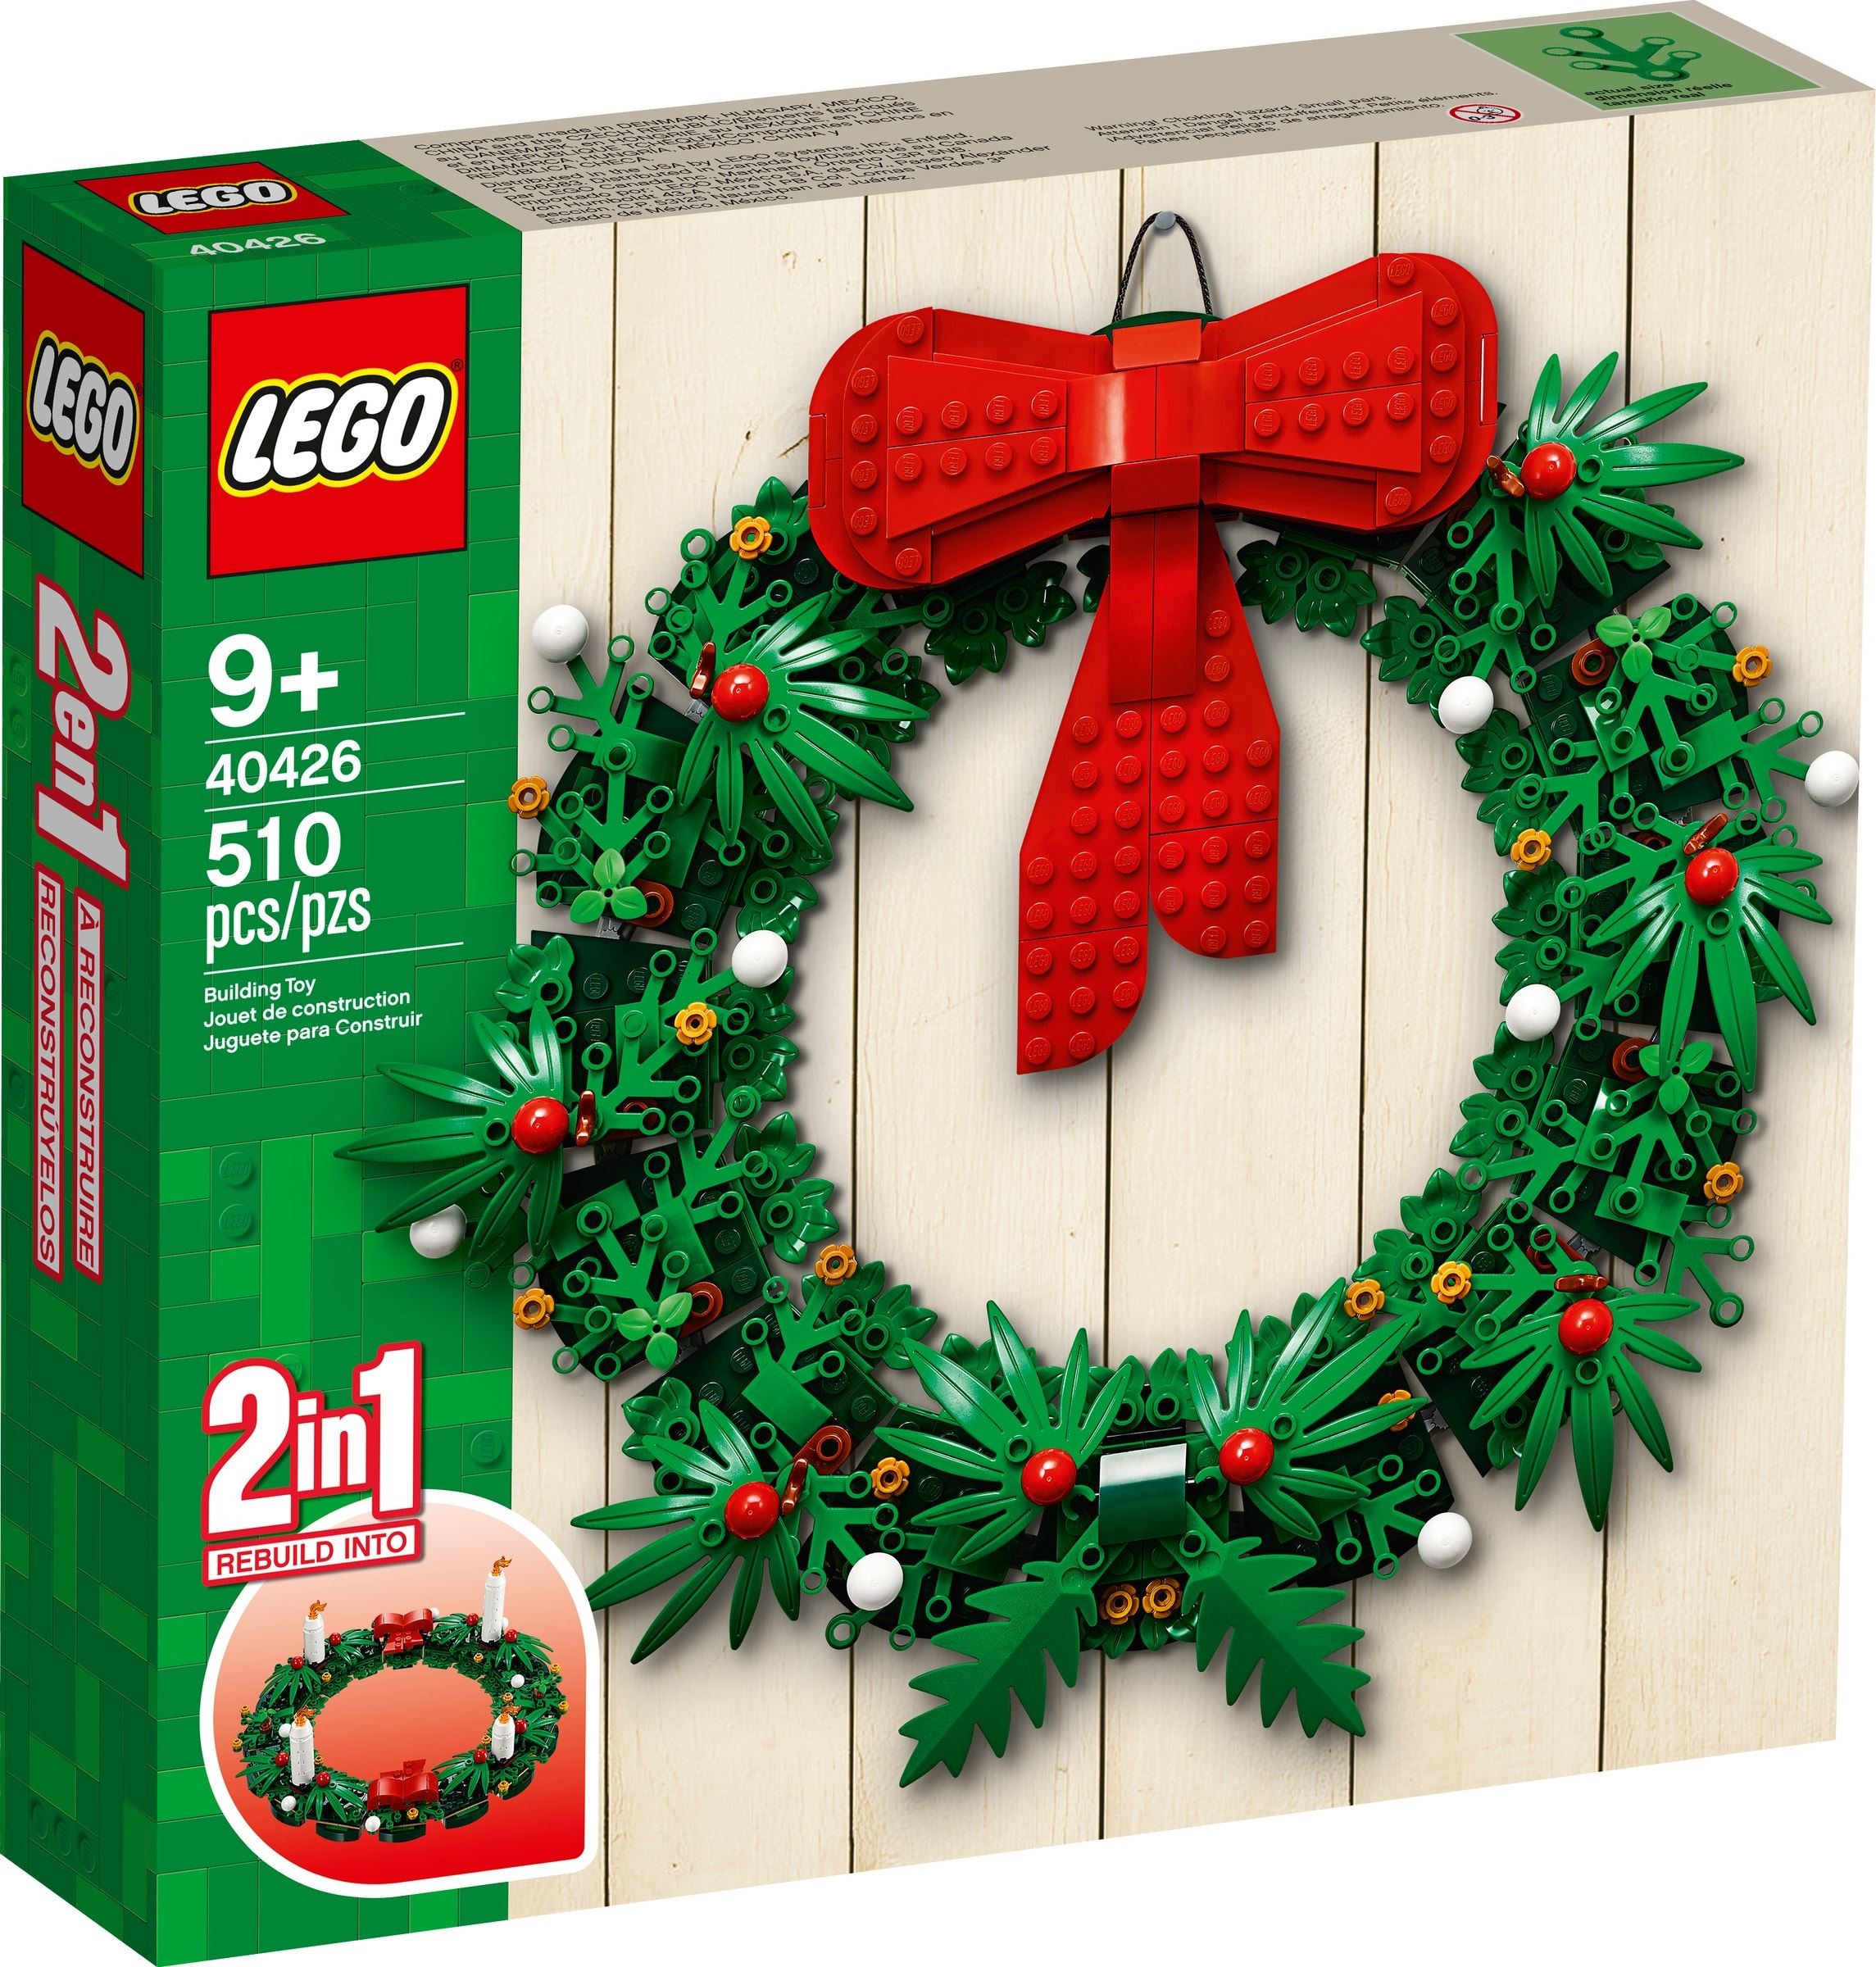 LEGO 40426 Adventskranz